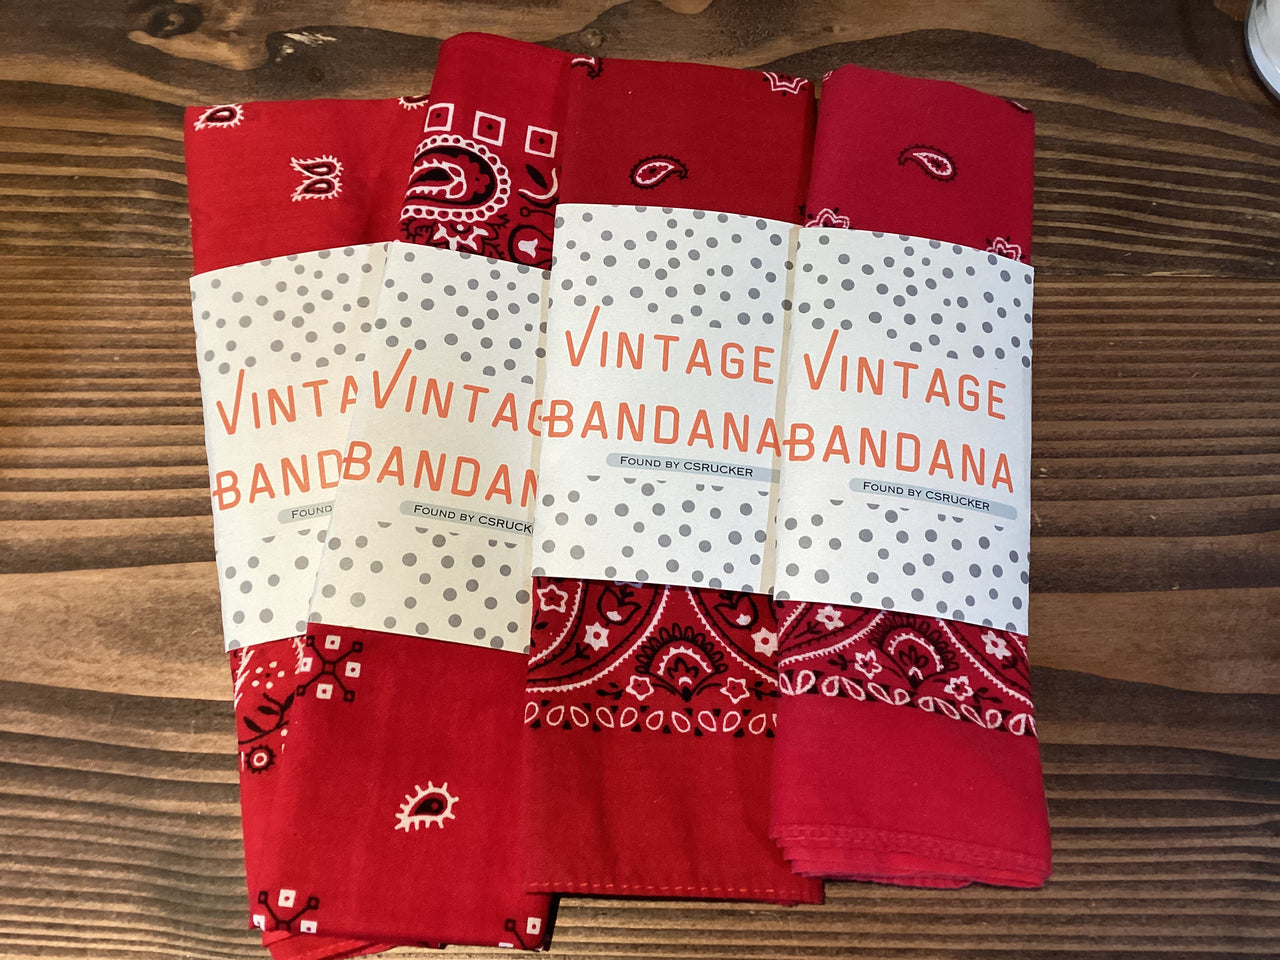 Vintage Bandana - $15